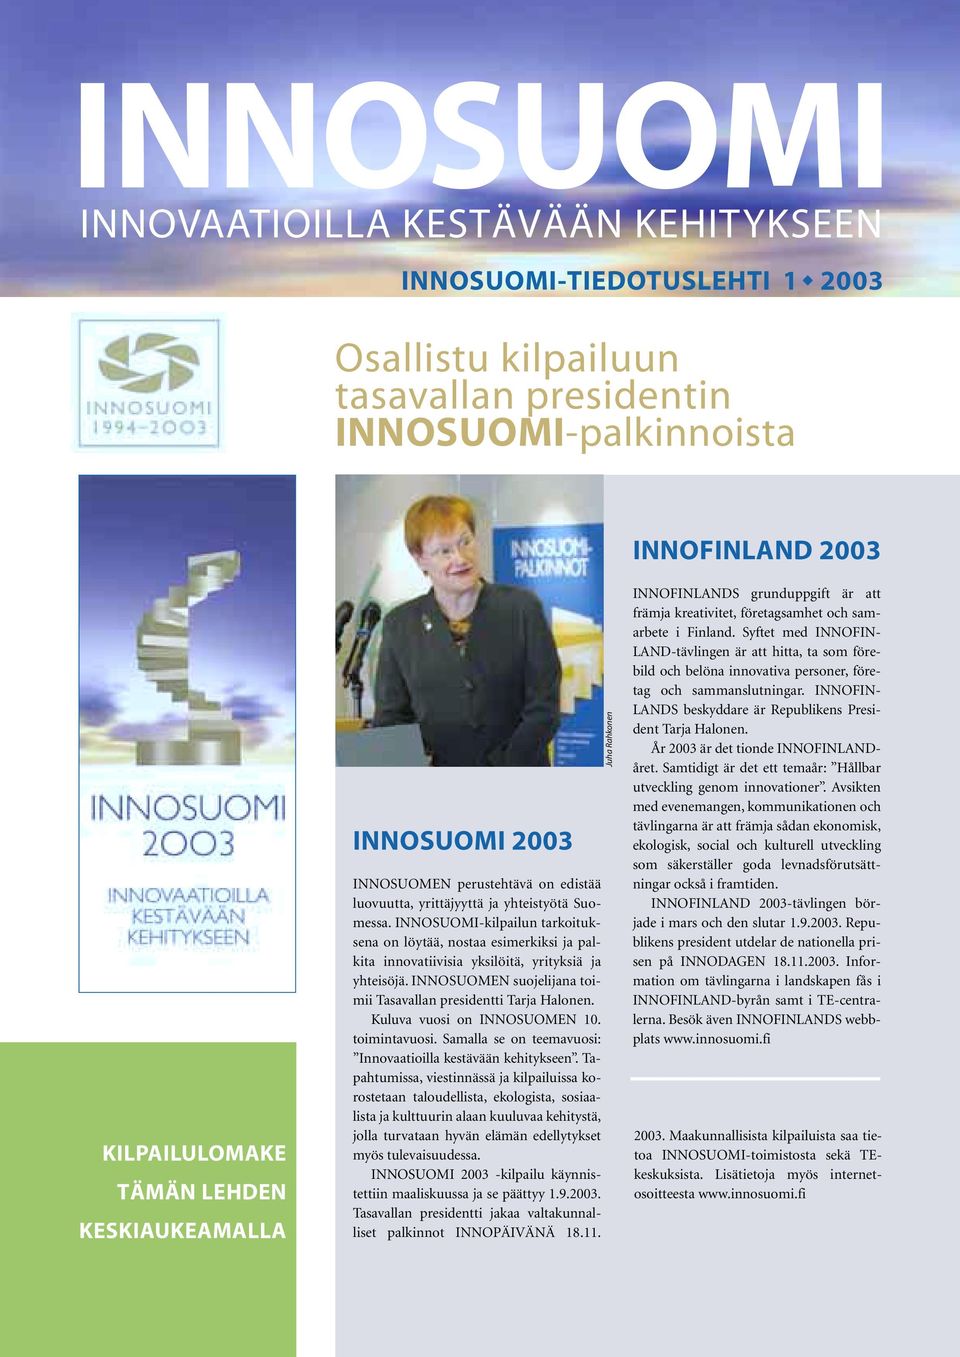 INNOSUOMI-kilpailun tarkoituksena on löytää, nostaa esimerkiksi ja palkita innovatiivisia yksilöitä, yrityksiä ja yhteisöjä. INNOSUOMEN suojelijana toimii Tasavallan presidentti Tarja Halonen.